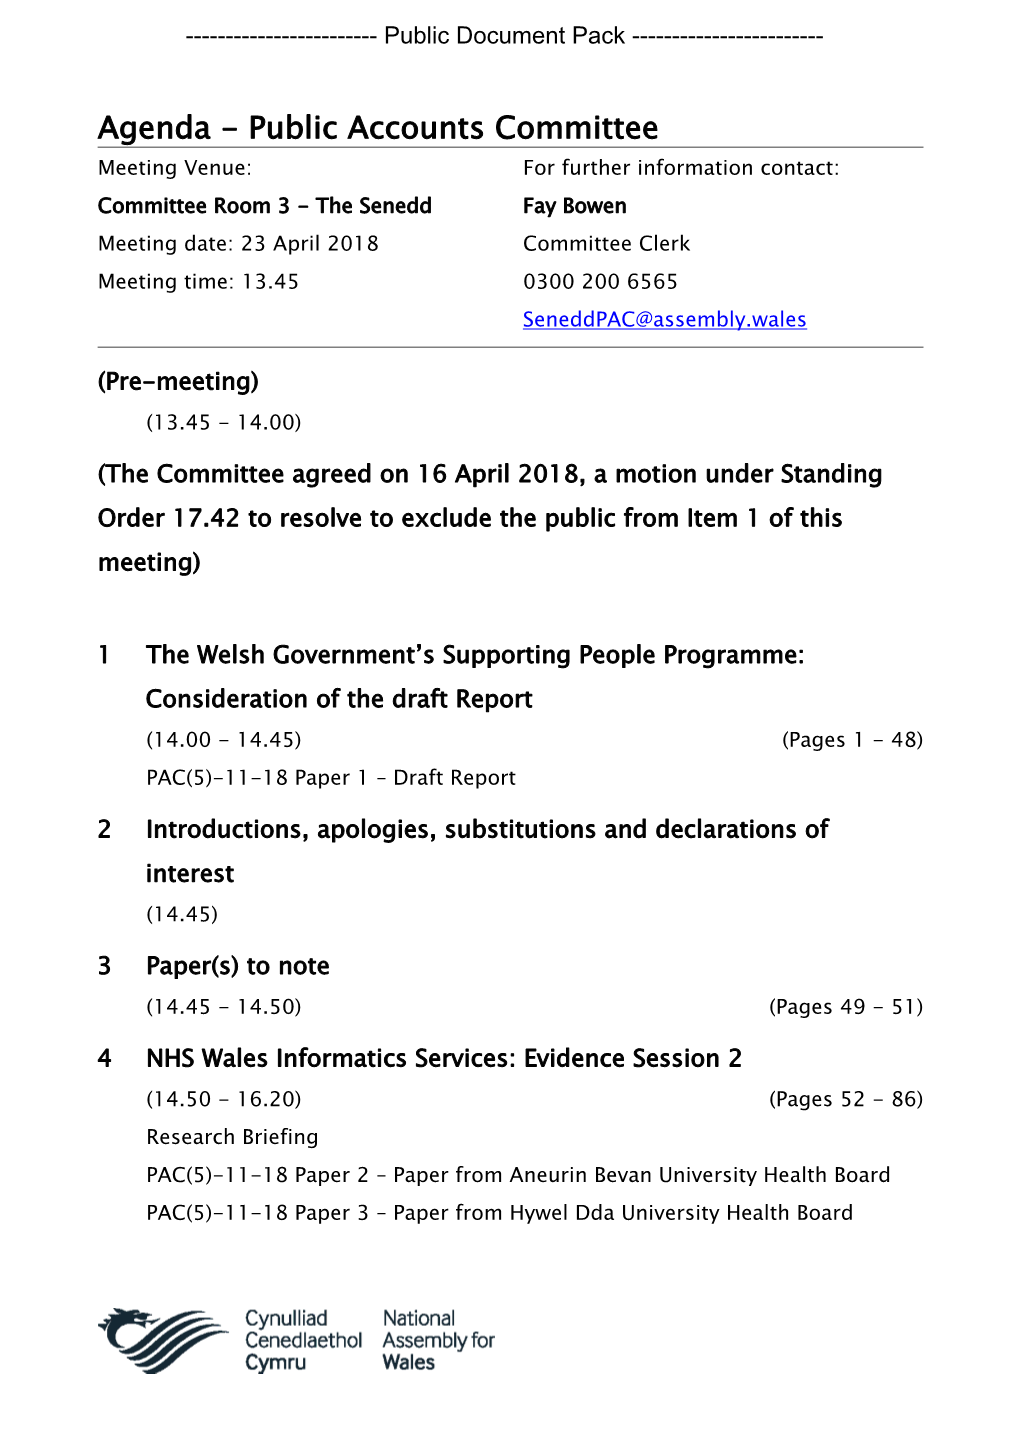 (Public Pack)Agenda Document for Public